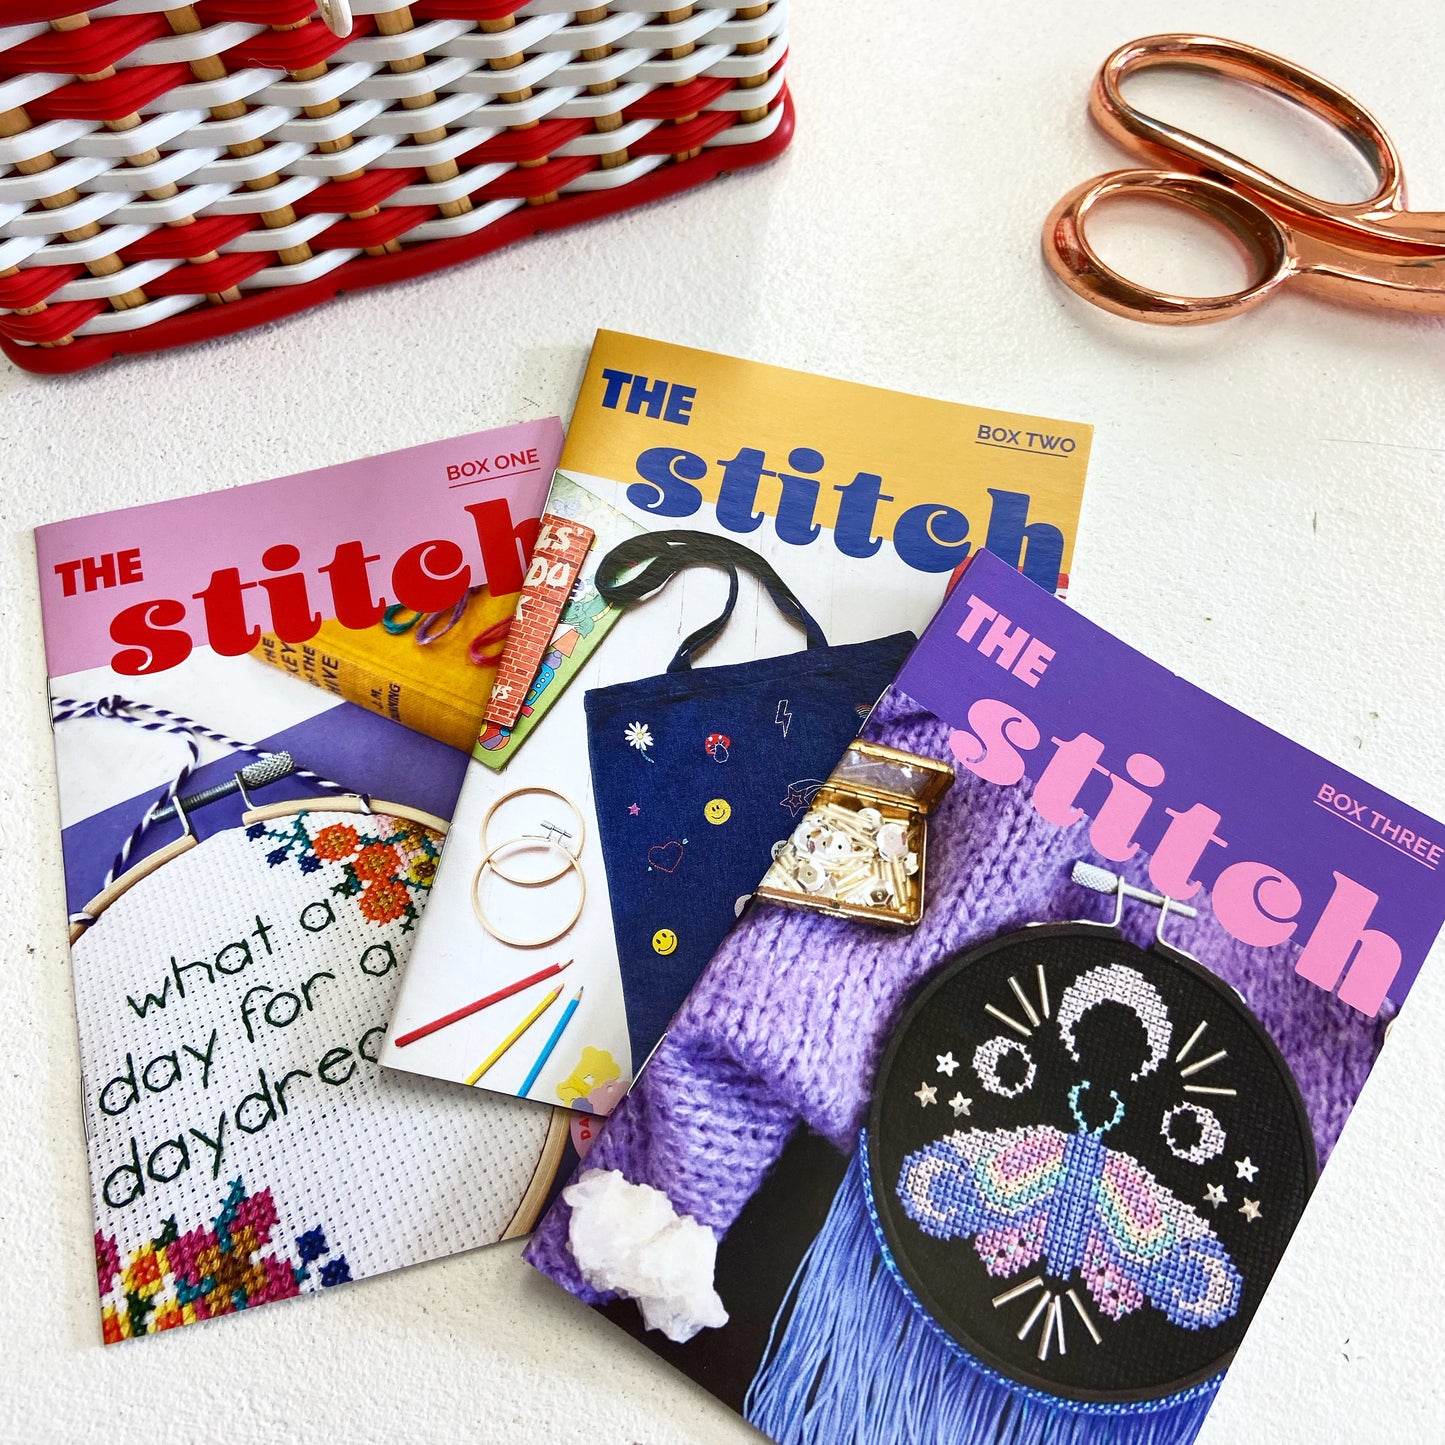 The Lucky Stitch Society mini zine sets